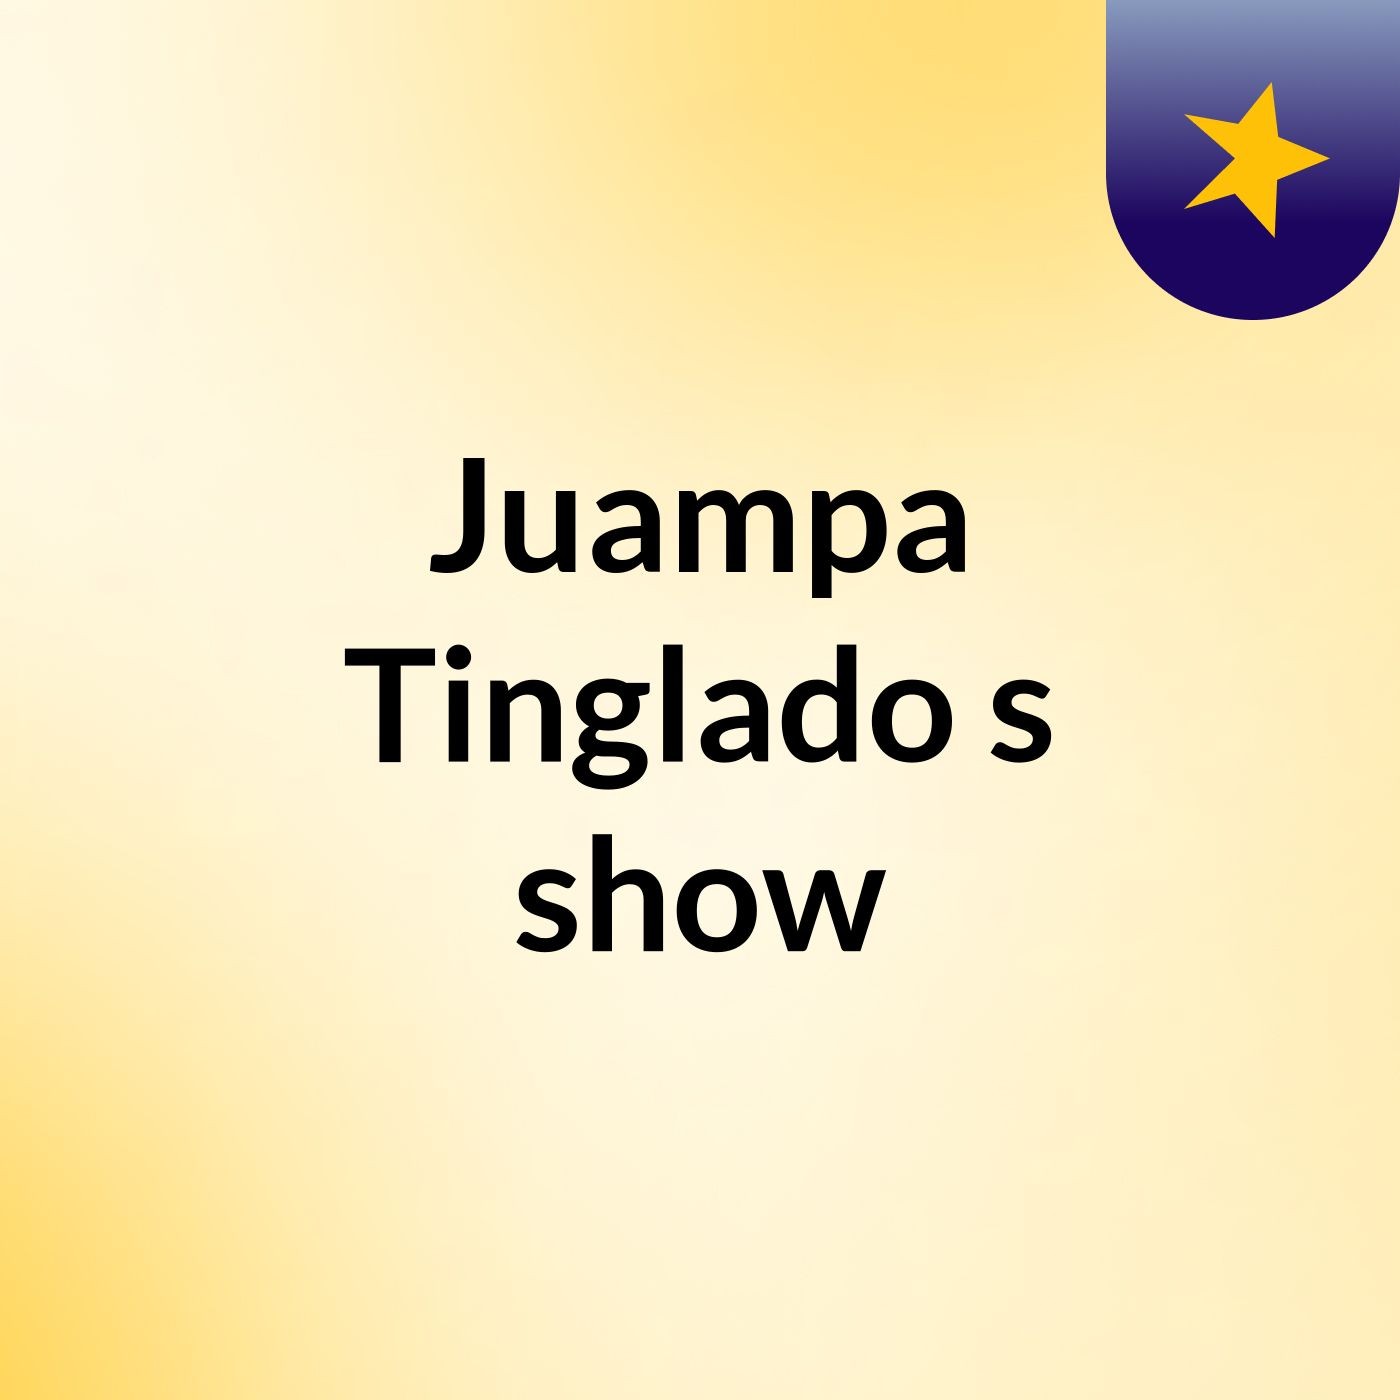 Juampa Tinglado's show